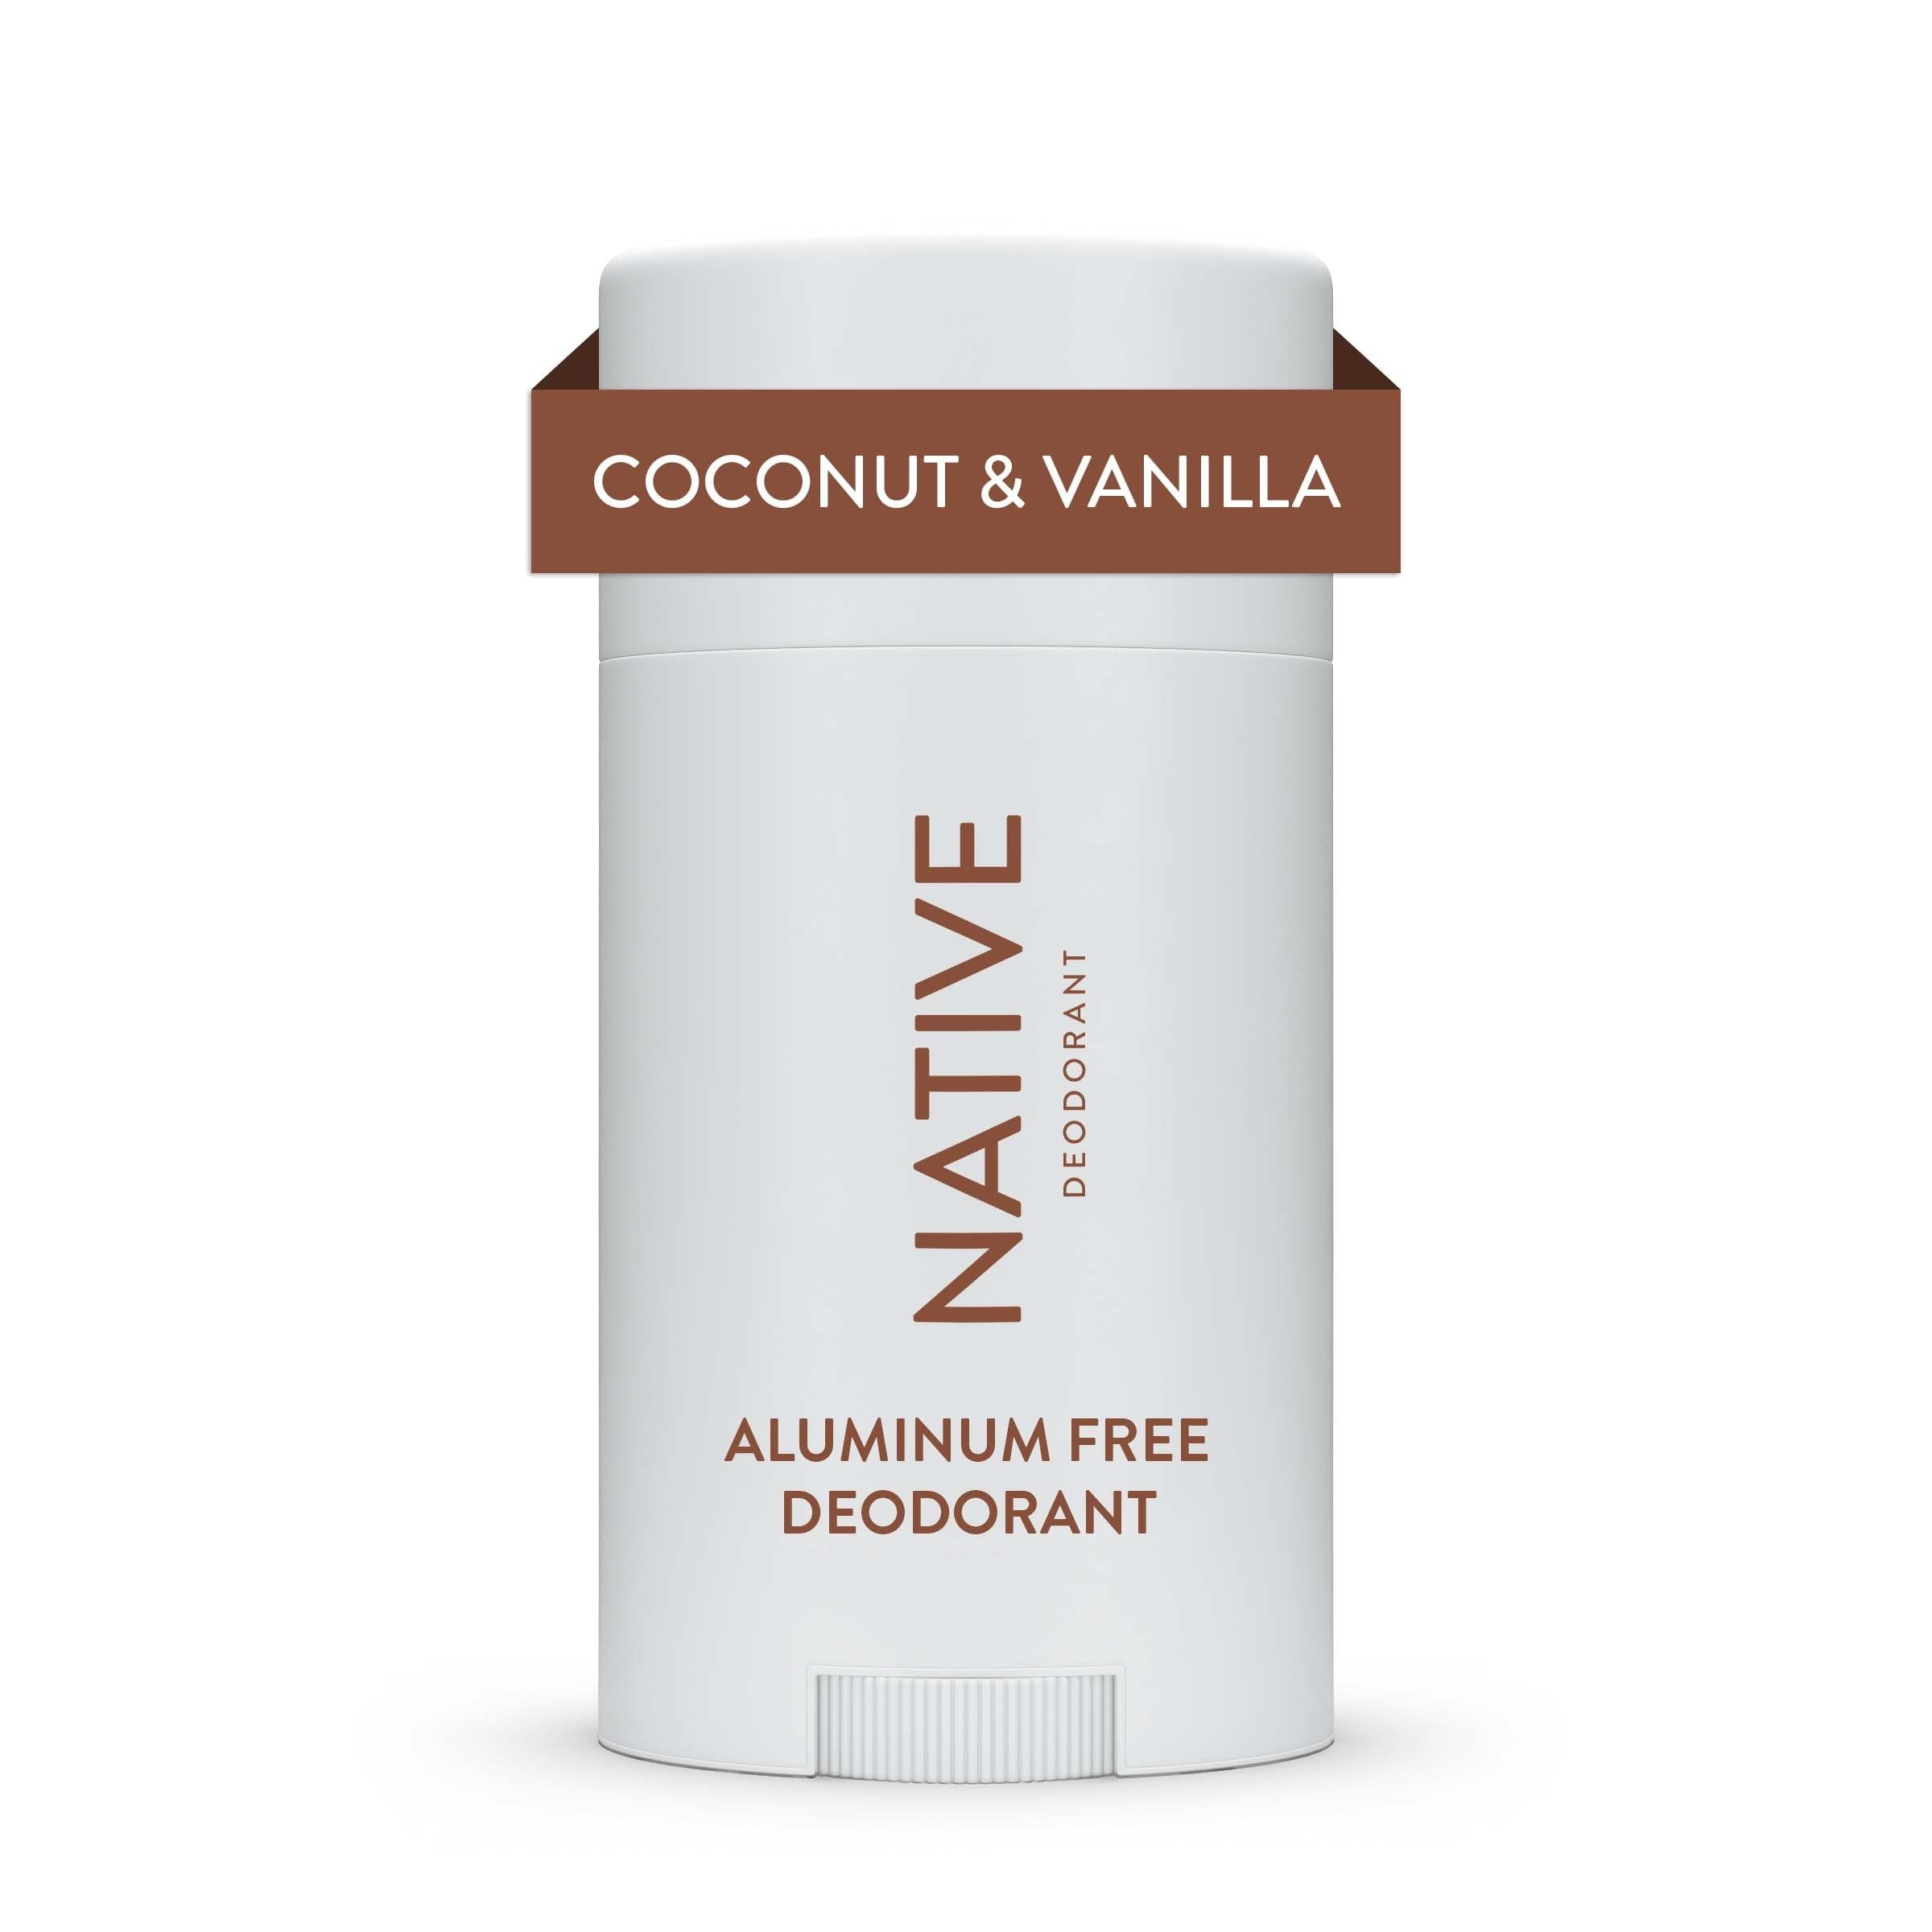 frill Indsigt accelerator Native Natural Deodorant, Coconut & Vanilla, Aluminum Free, 2.65 oz -  Walmart.com